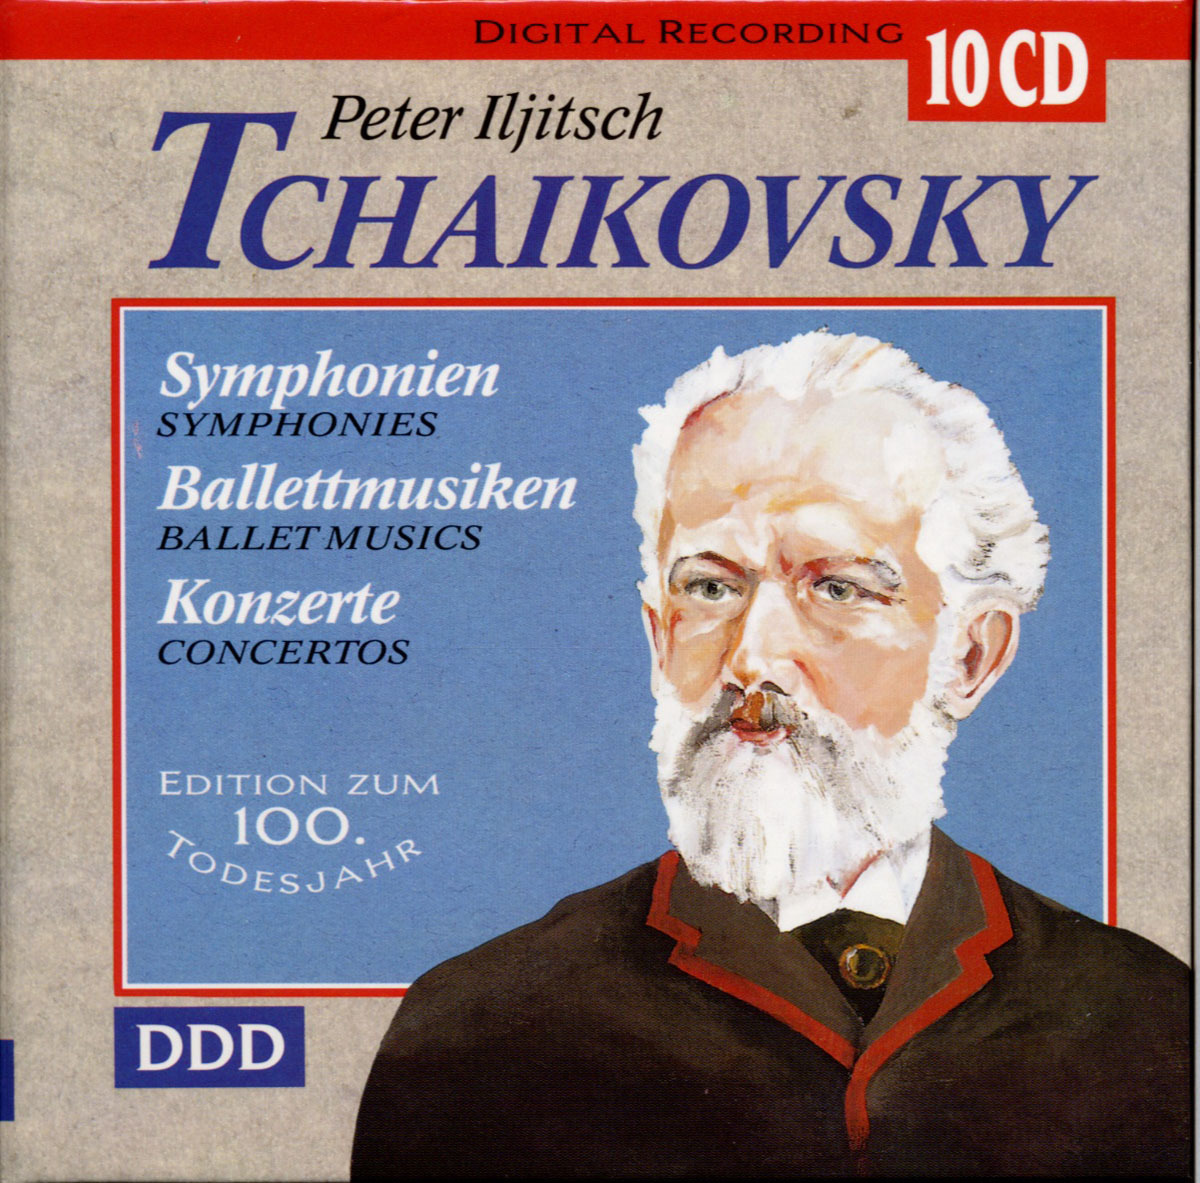 Peter Iljitsch Tchaikovsky - Symphonien, Balletmusiken, Konzerte